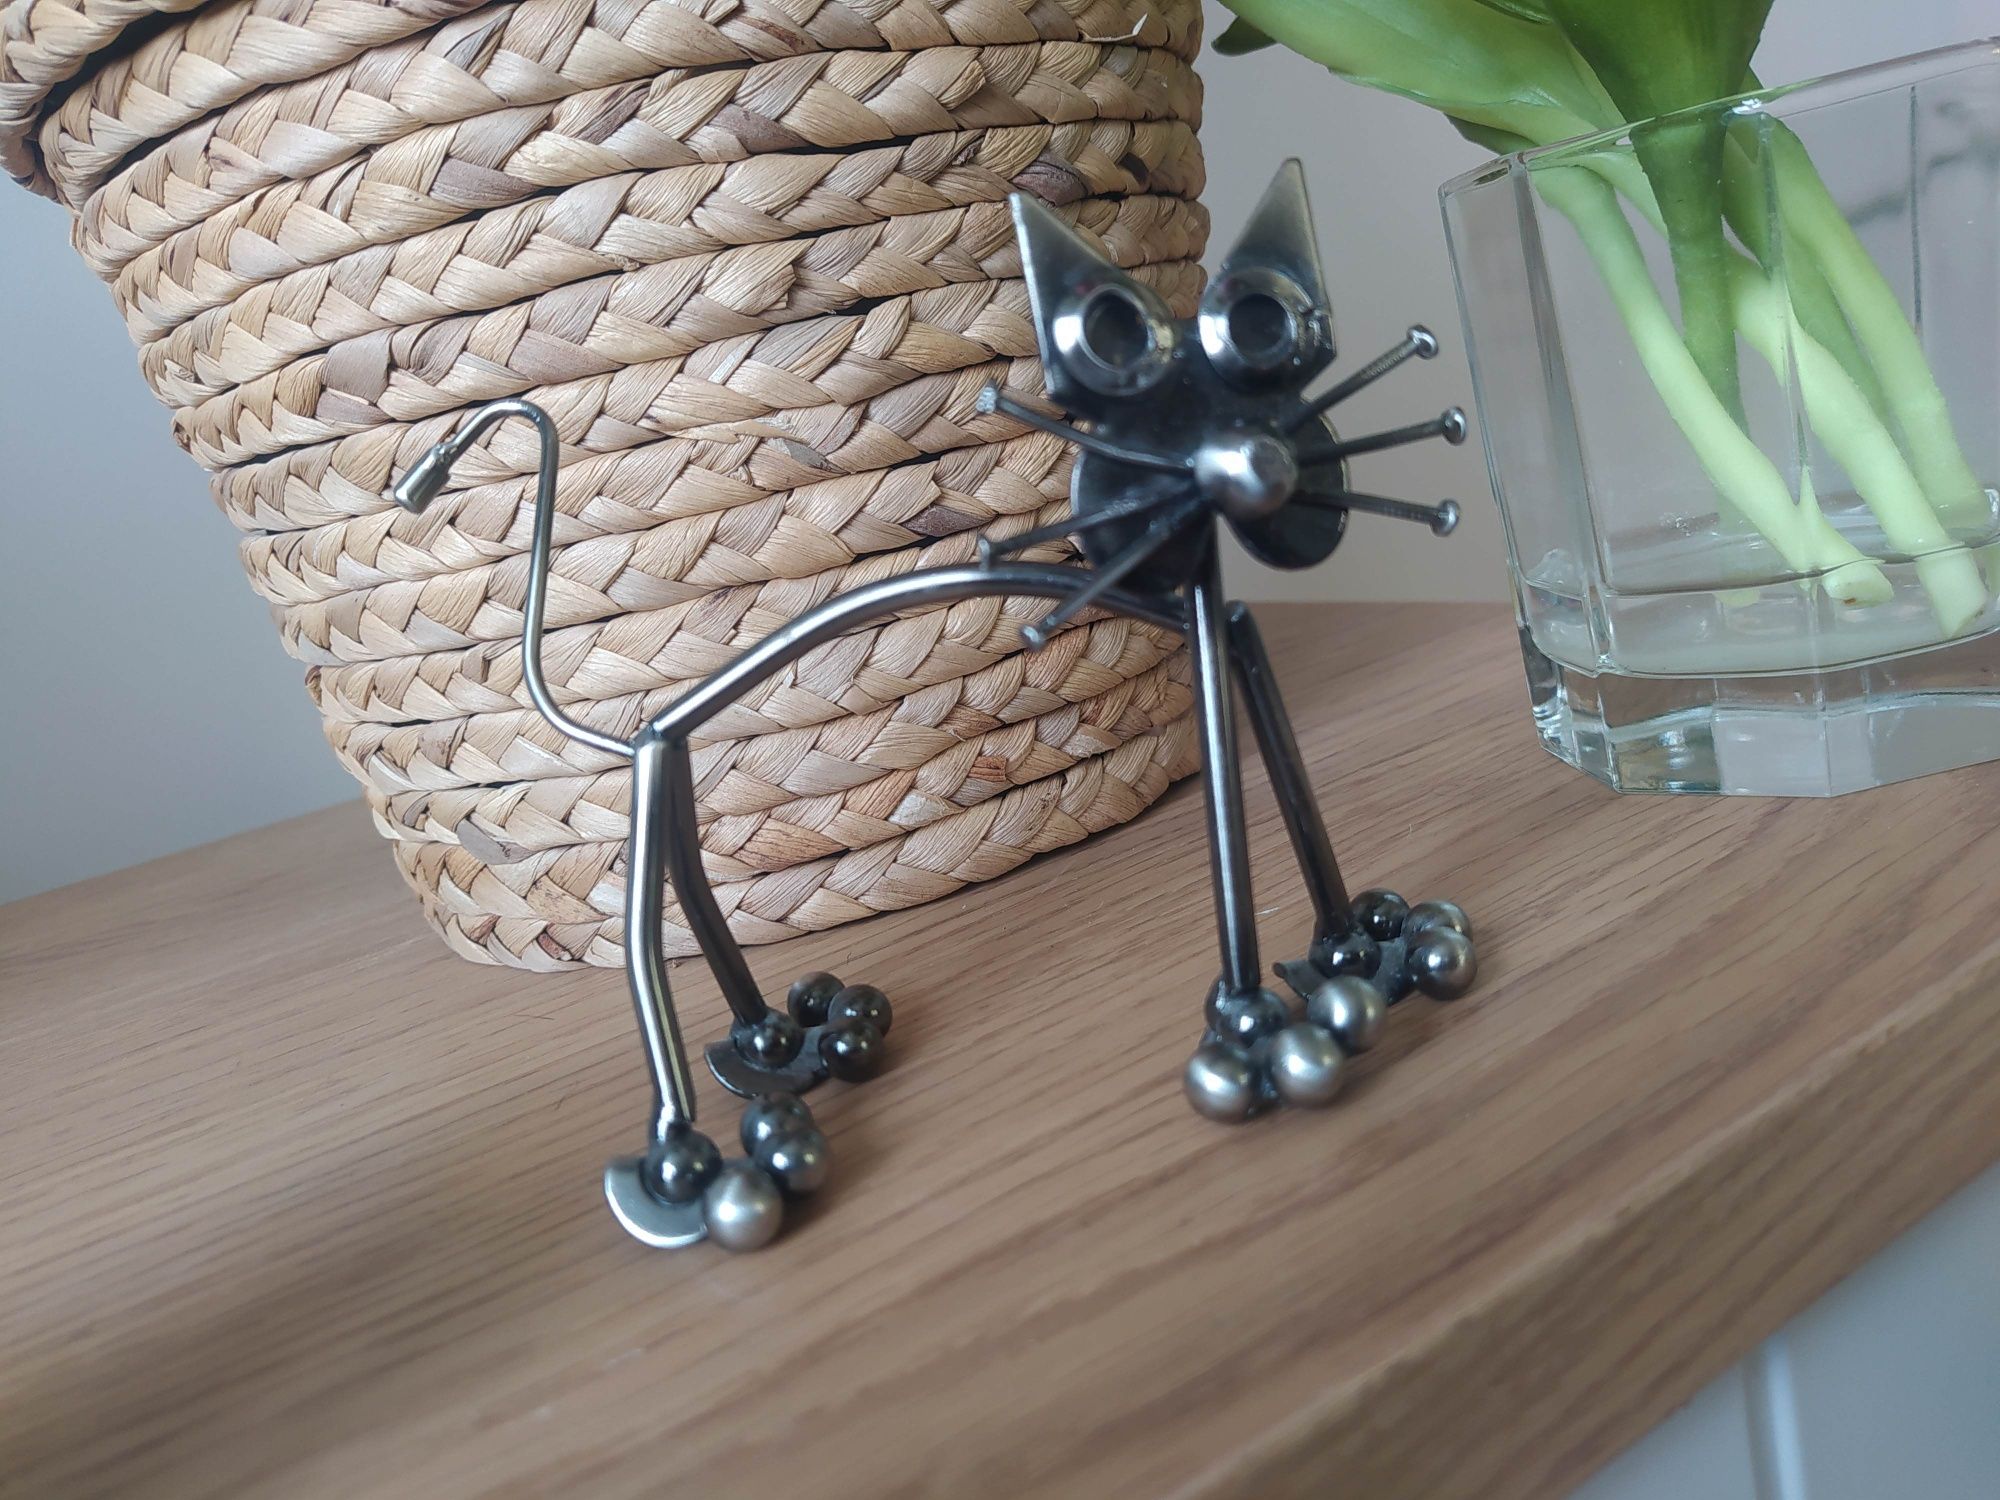 Kot - figurka metalowa ze śrubek, gwoździ UNIKAT